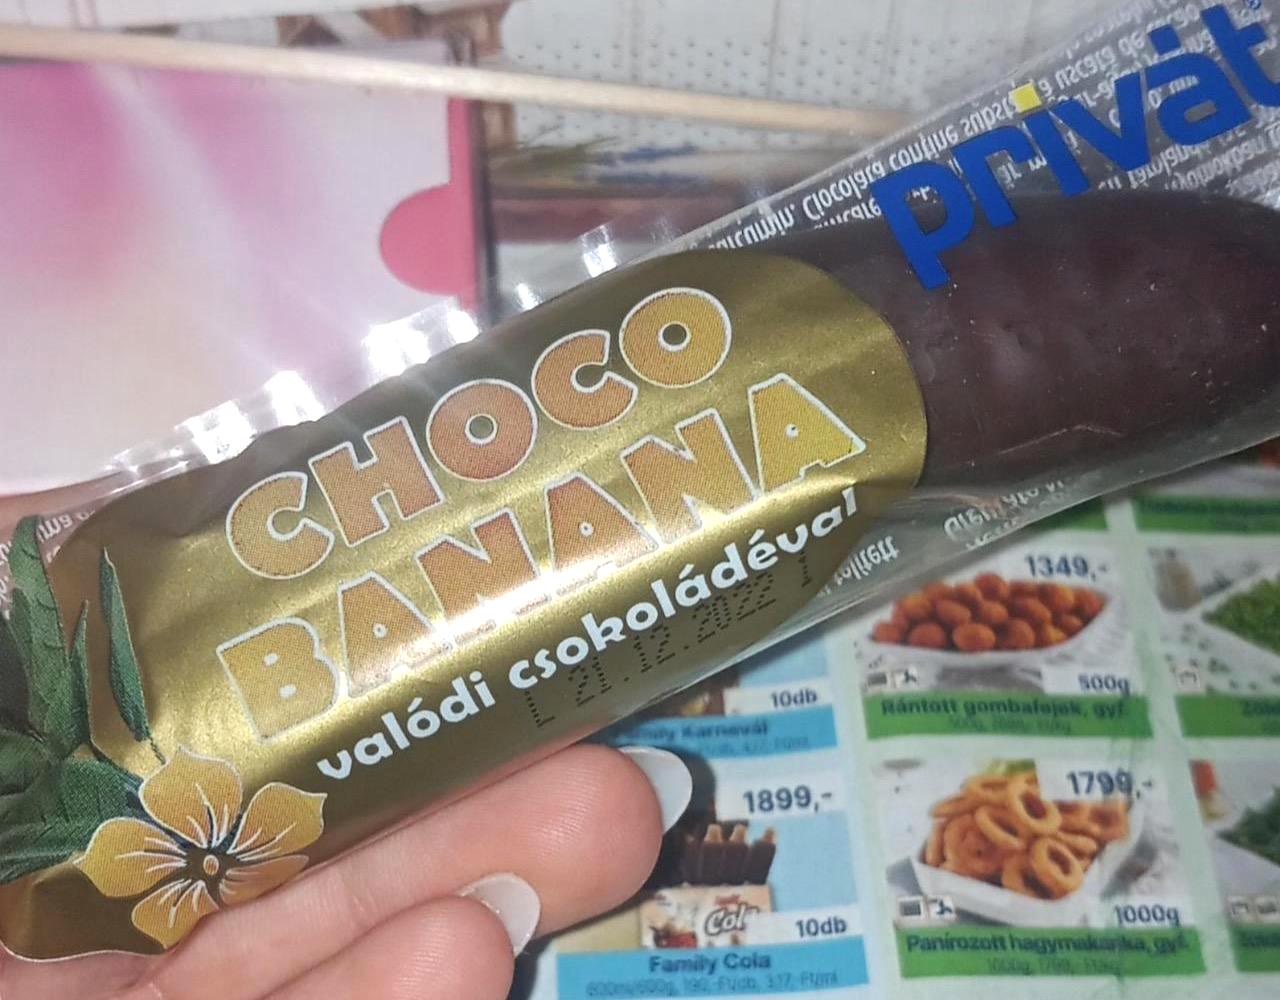 Képek - Banános csoki Choco banana Privát